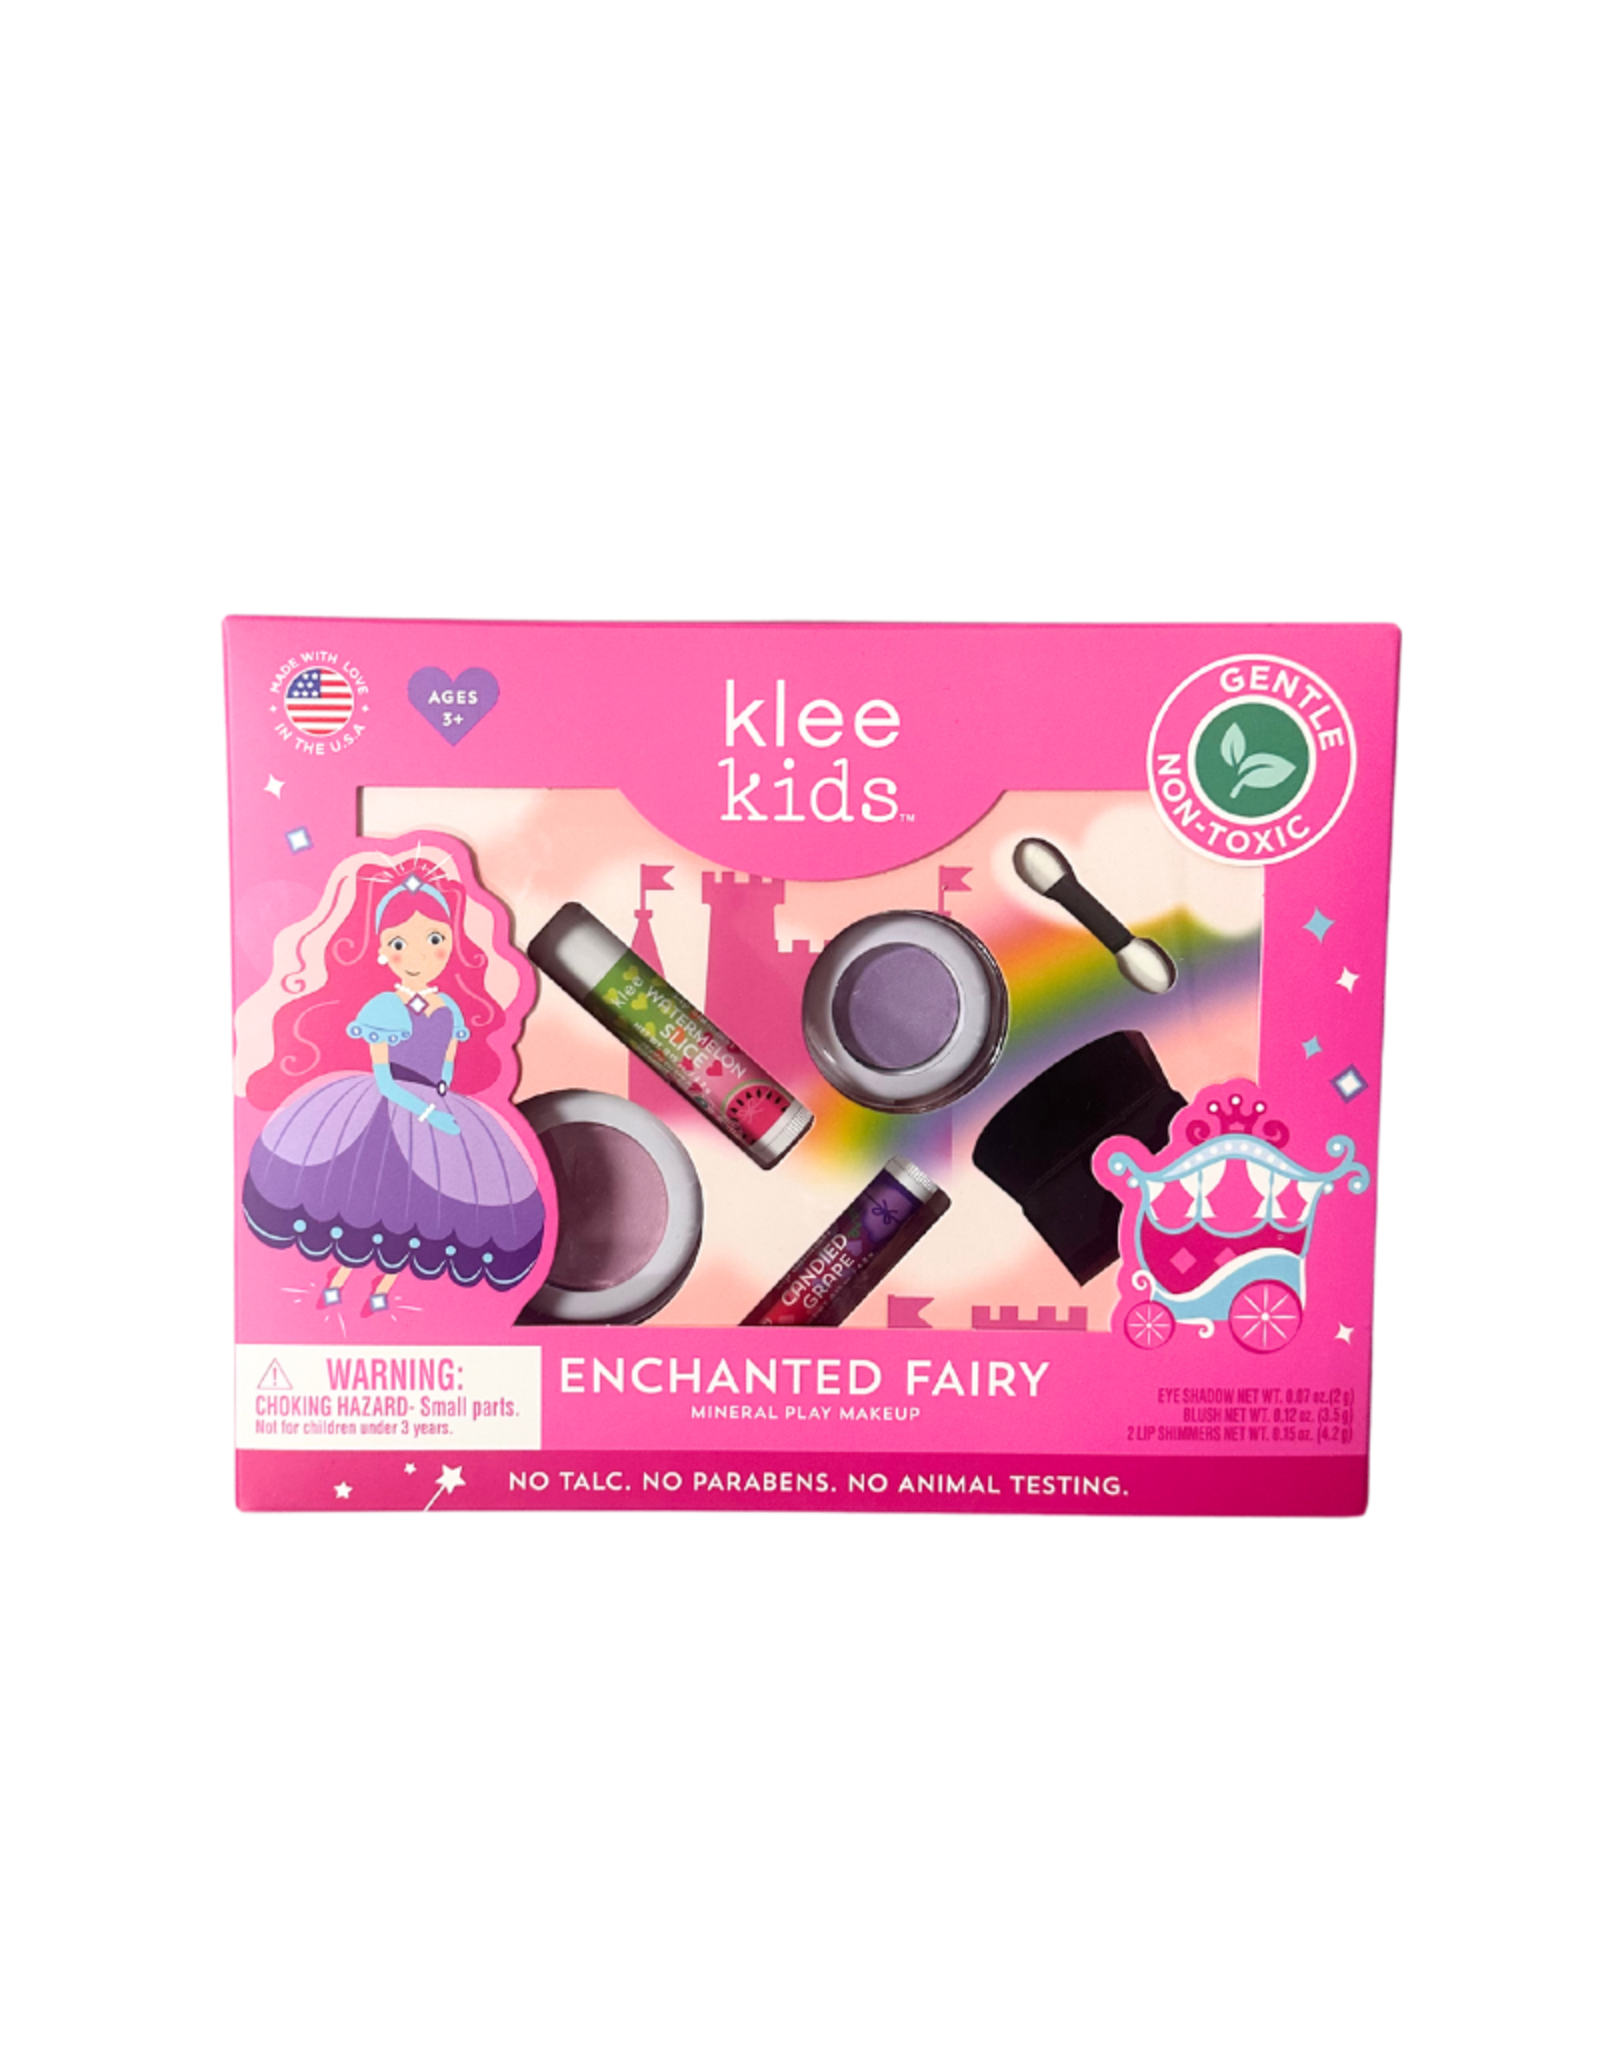 Klee Enchanted Fairy - Klee Kids Natural Make Up Kit